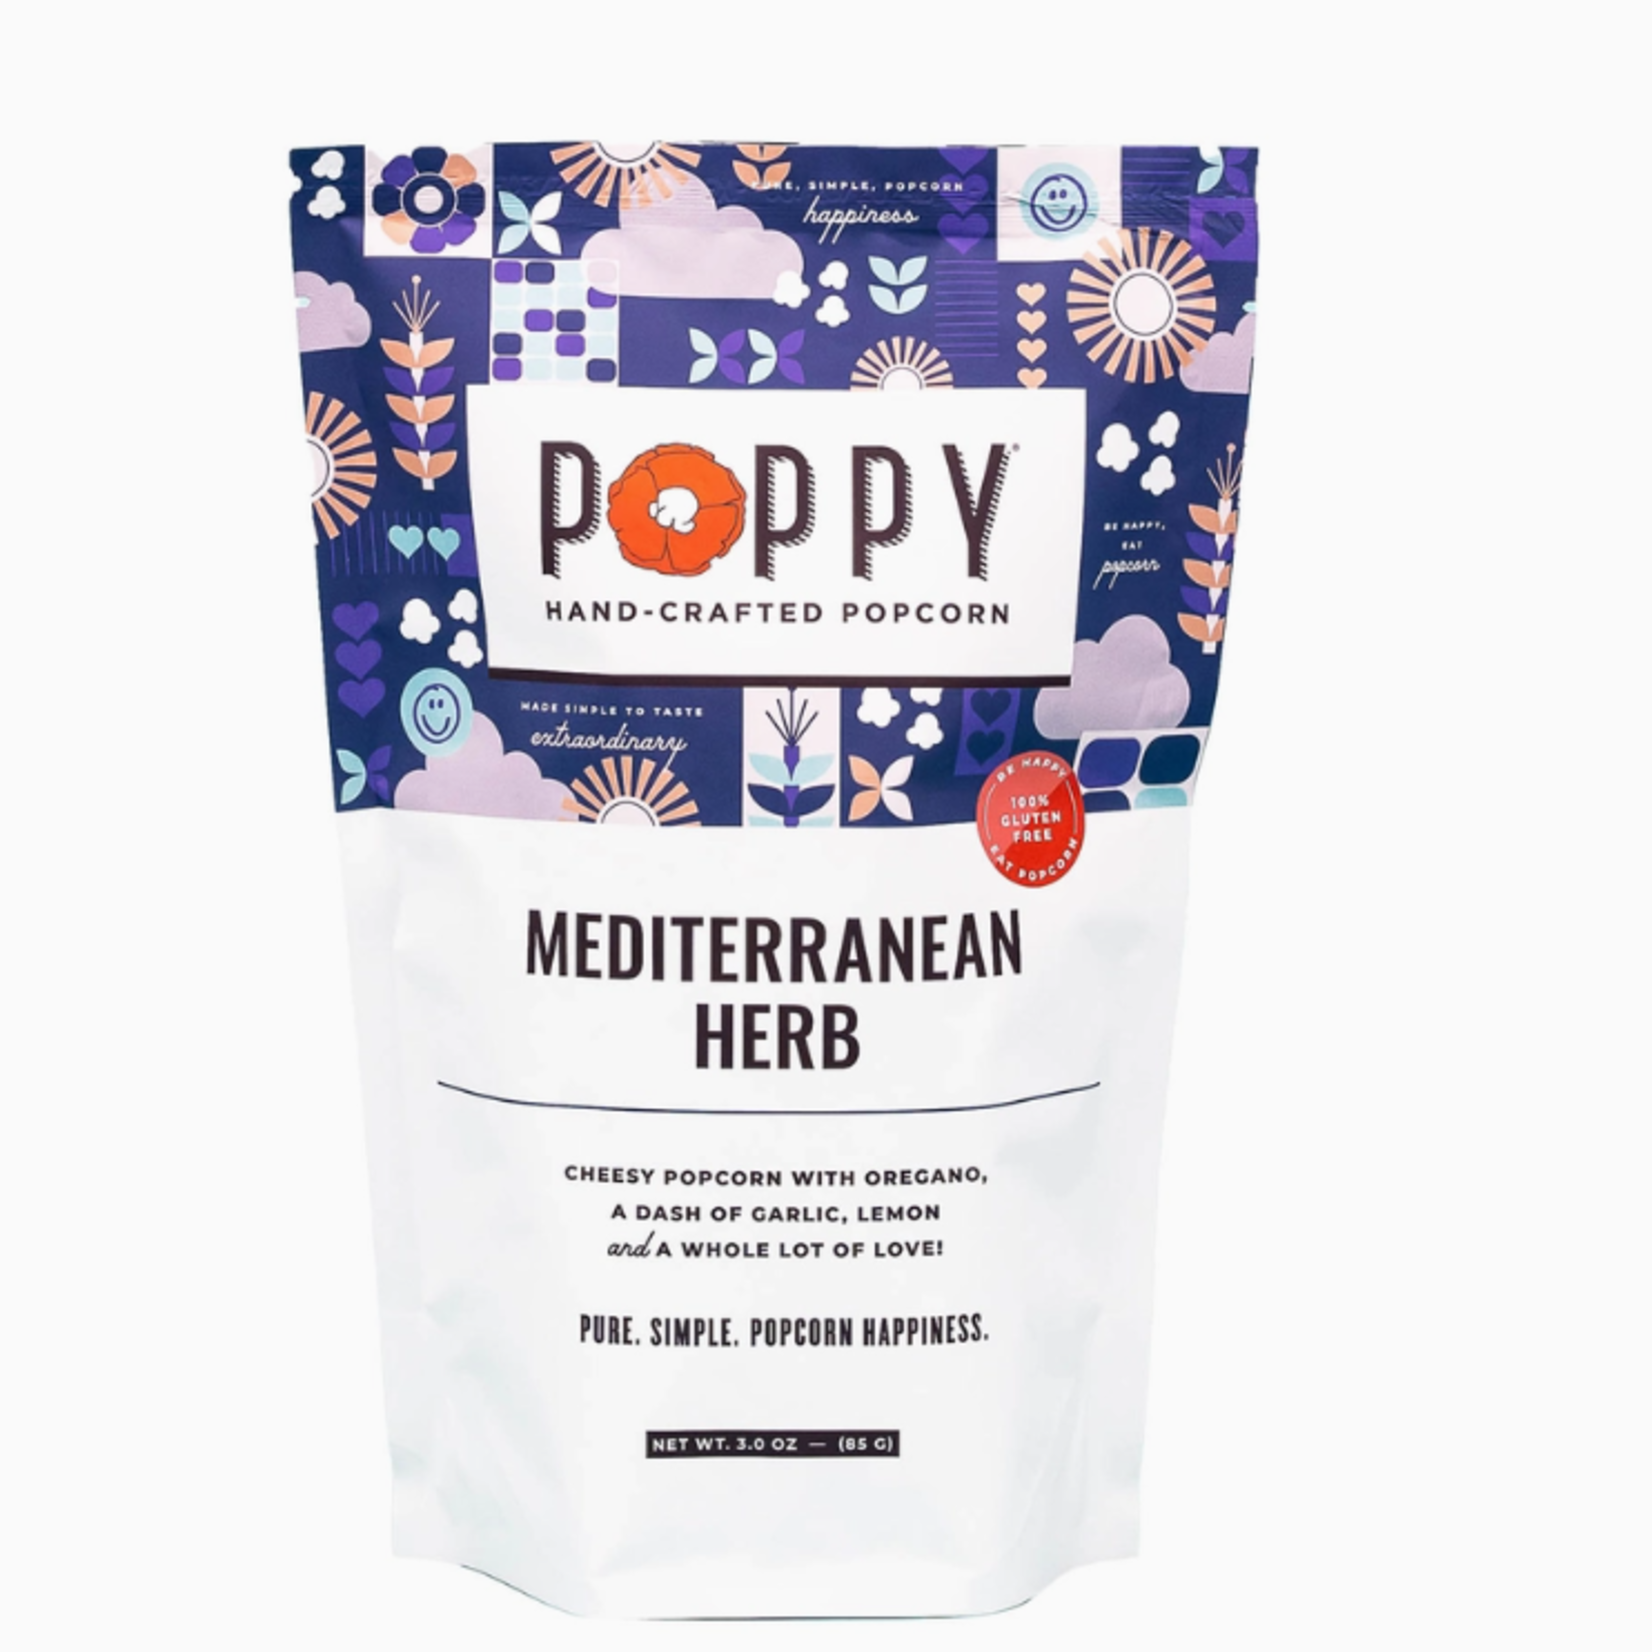 Poppy Handcrafted Popcorn Mediterranean Herb